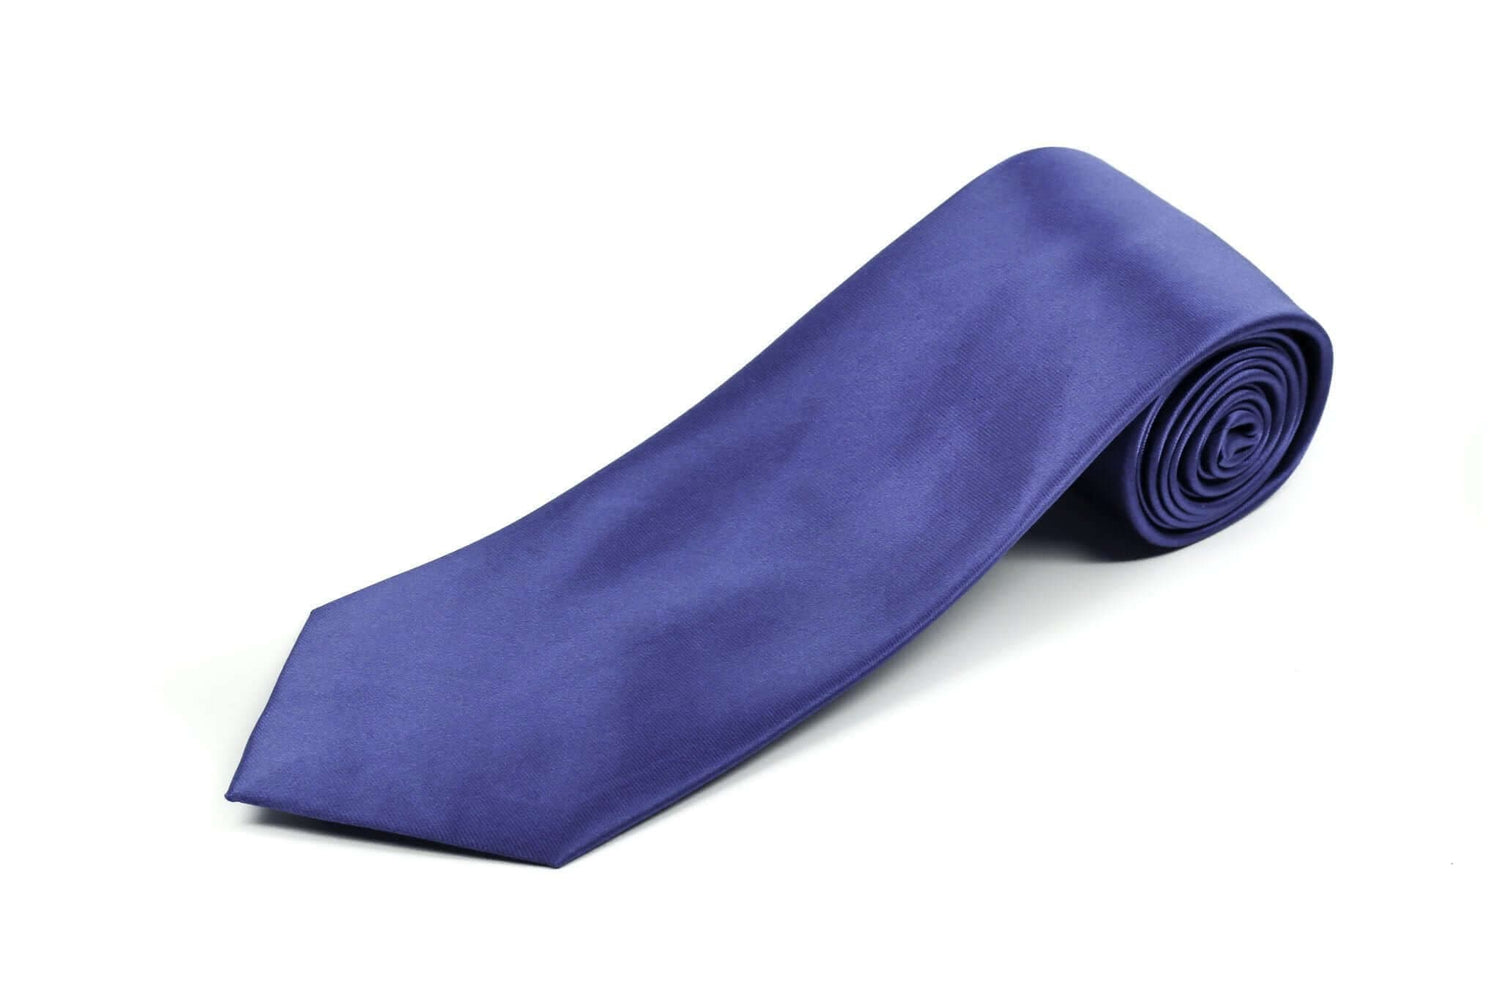 Extra Long Tie in Dark Navy Blue Color 